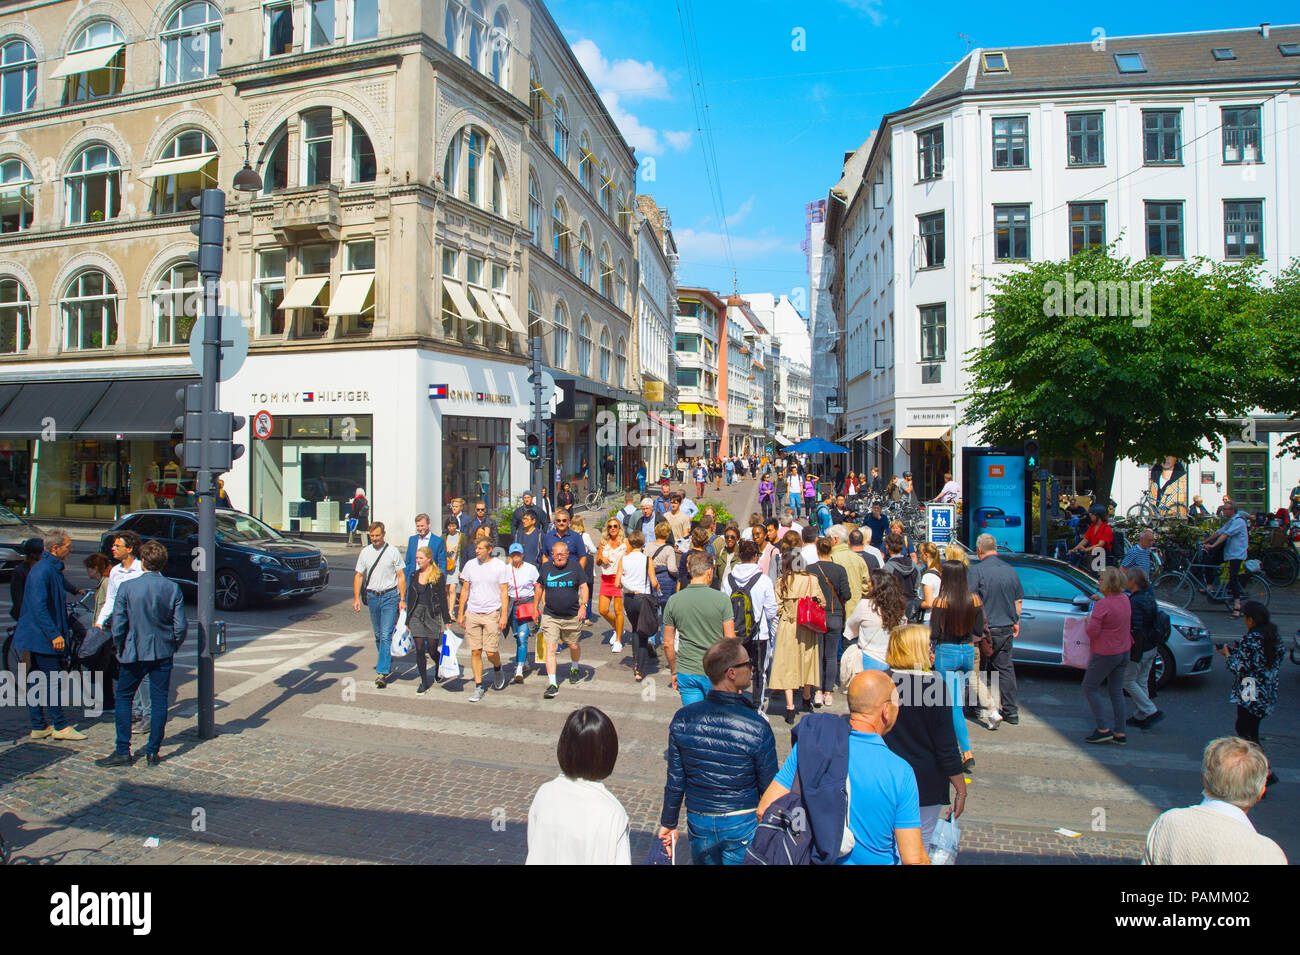 COPENHAGEN, Danimarca - 14 giugno 2018: le persone che attraversano la strada a Copenhagen central shopping street. Copenhagen è la capitale della Danimarca. Foto Stock